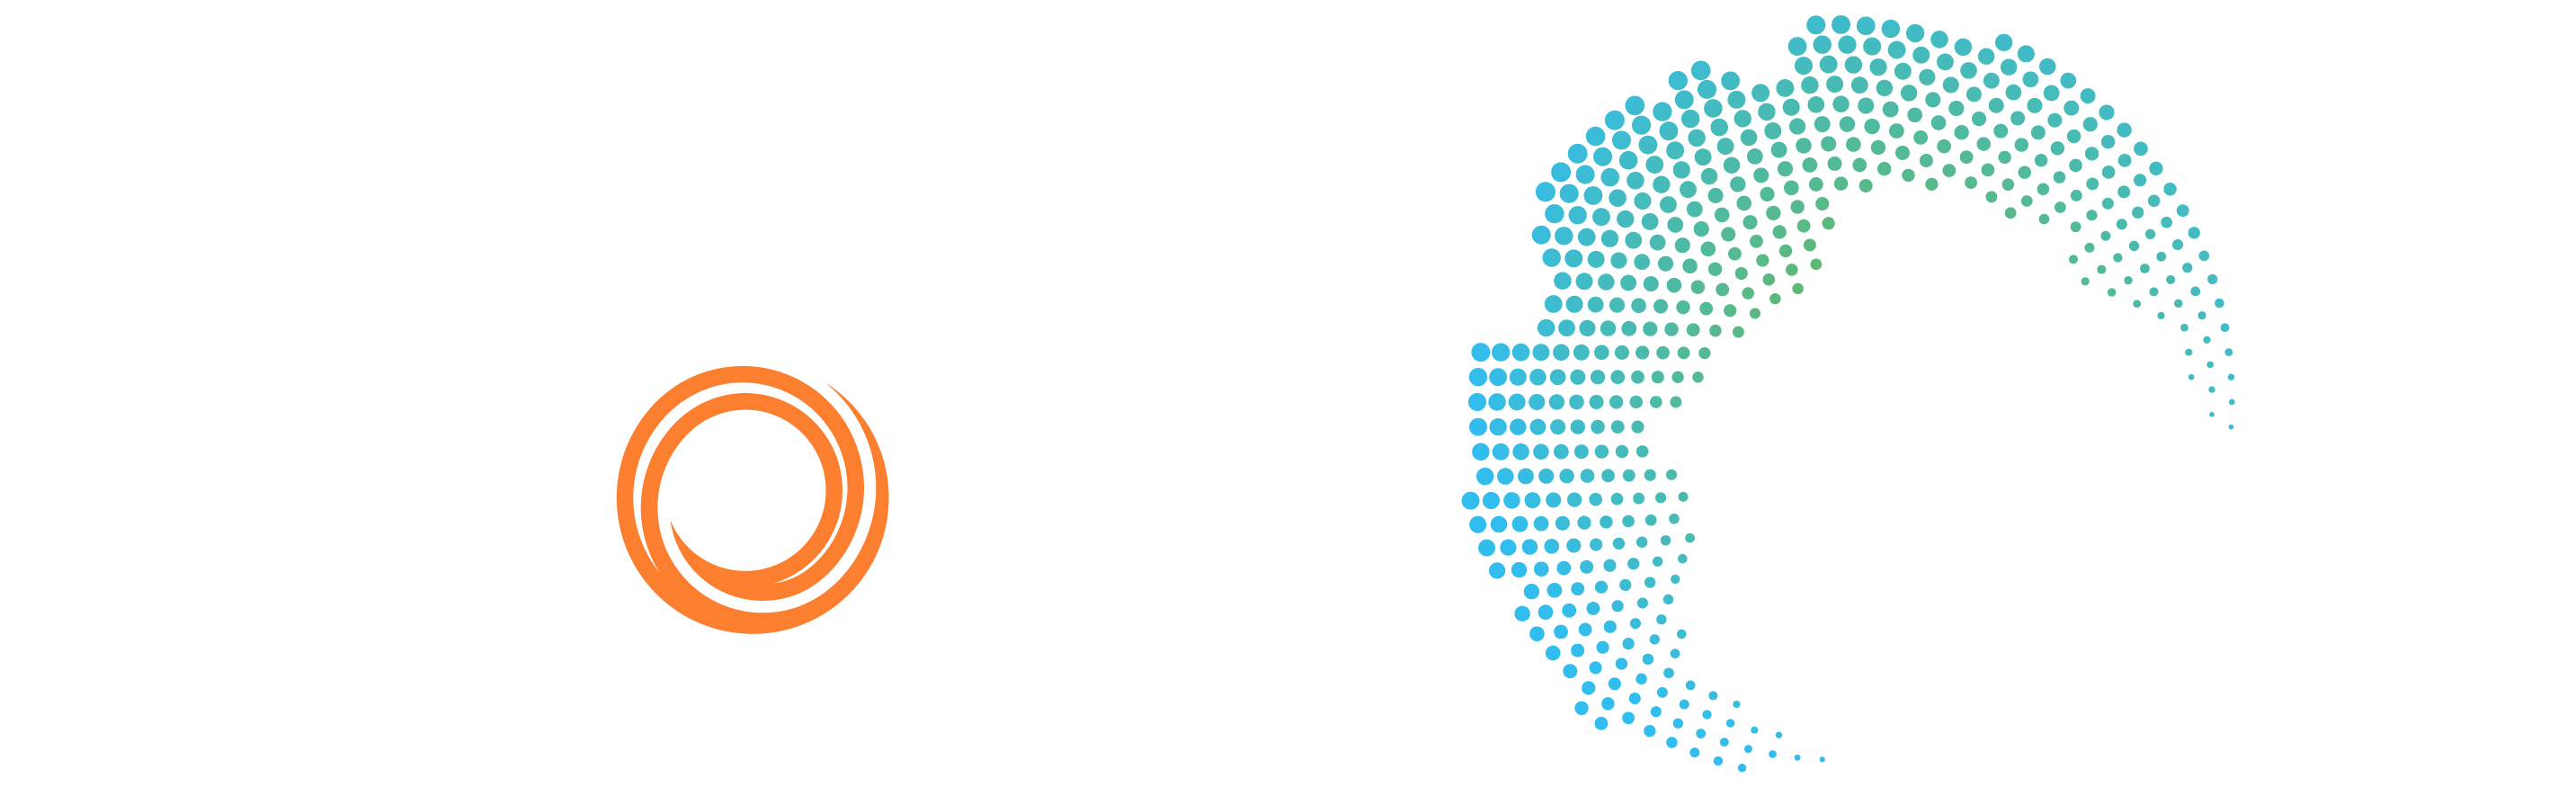 Chinsay + Veson Platform Partner Integration